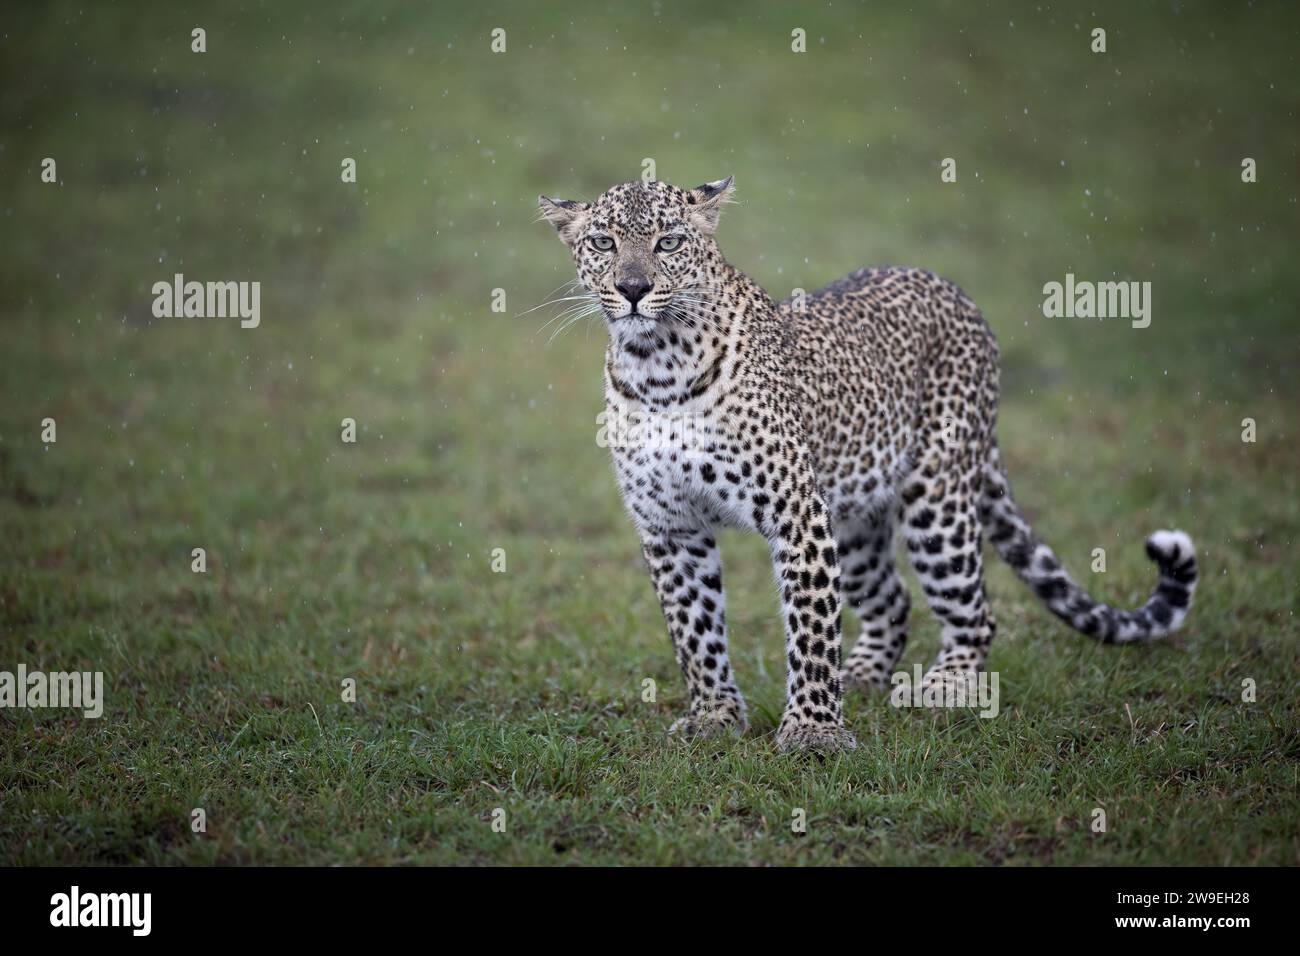 Lo sguardo del leopardo entra direttamente nella fotocamera: Piove molto pesantemente, Masai Mara, Olare Motorogi Conservancy, Kenya. Foto Stock